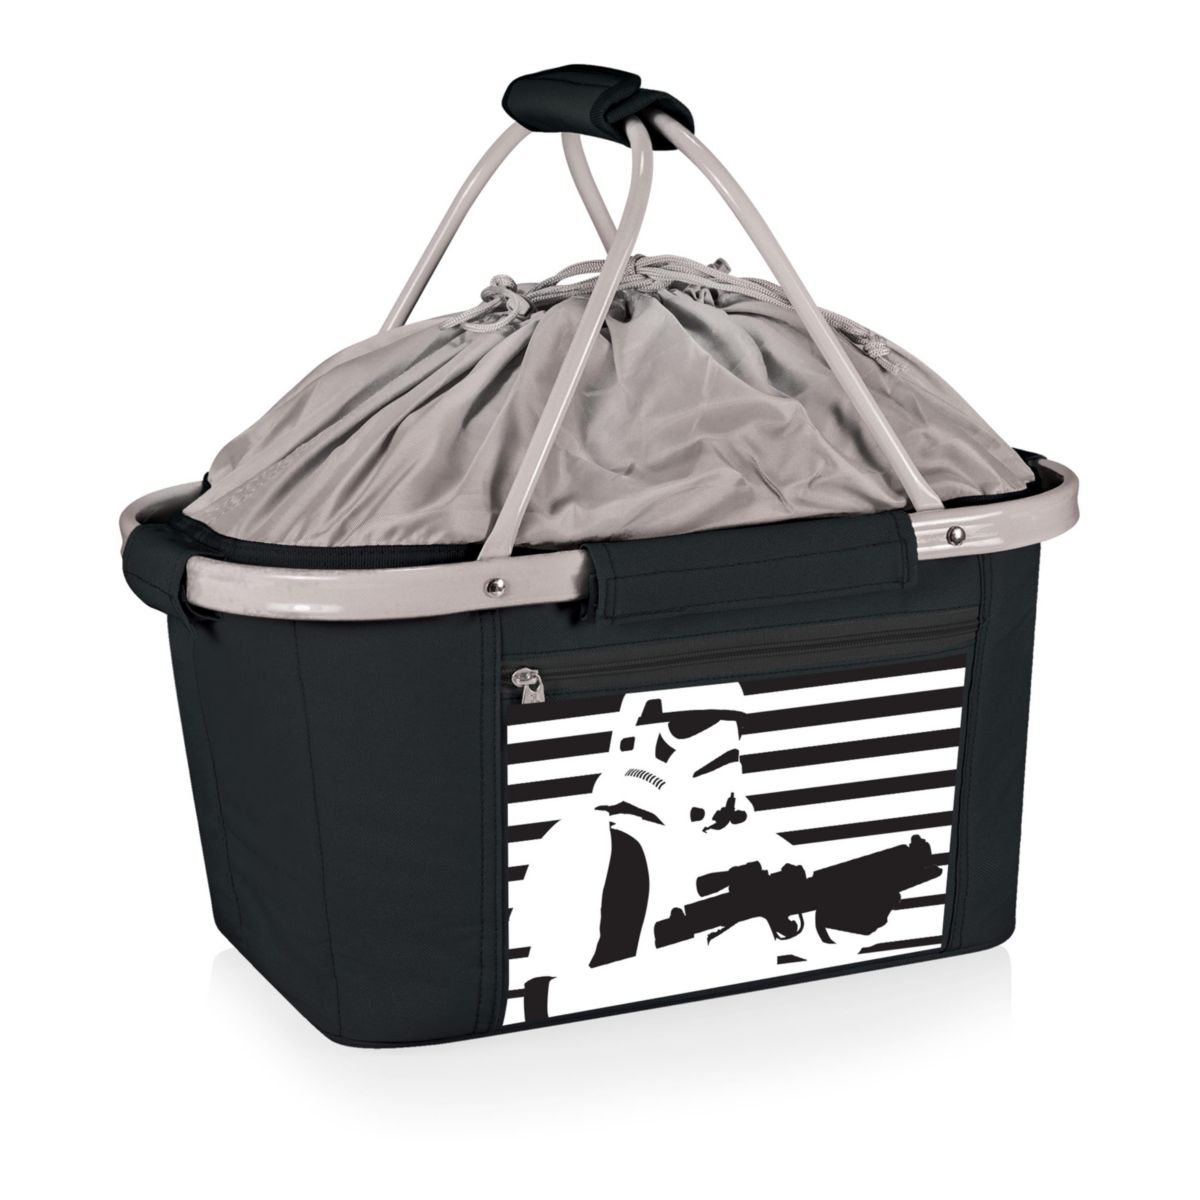 Складная сумка-холодильник Star Wars Storm Trooper от Picnic Time Picnic Time